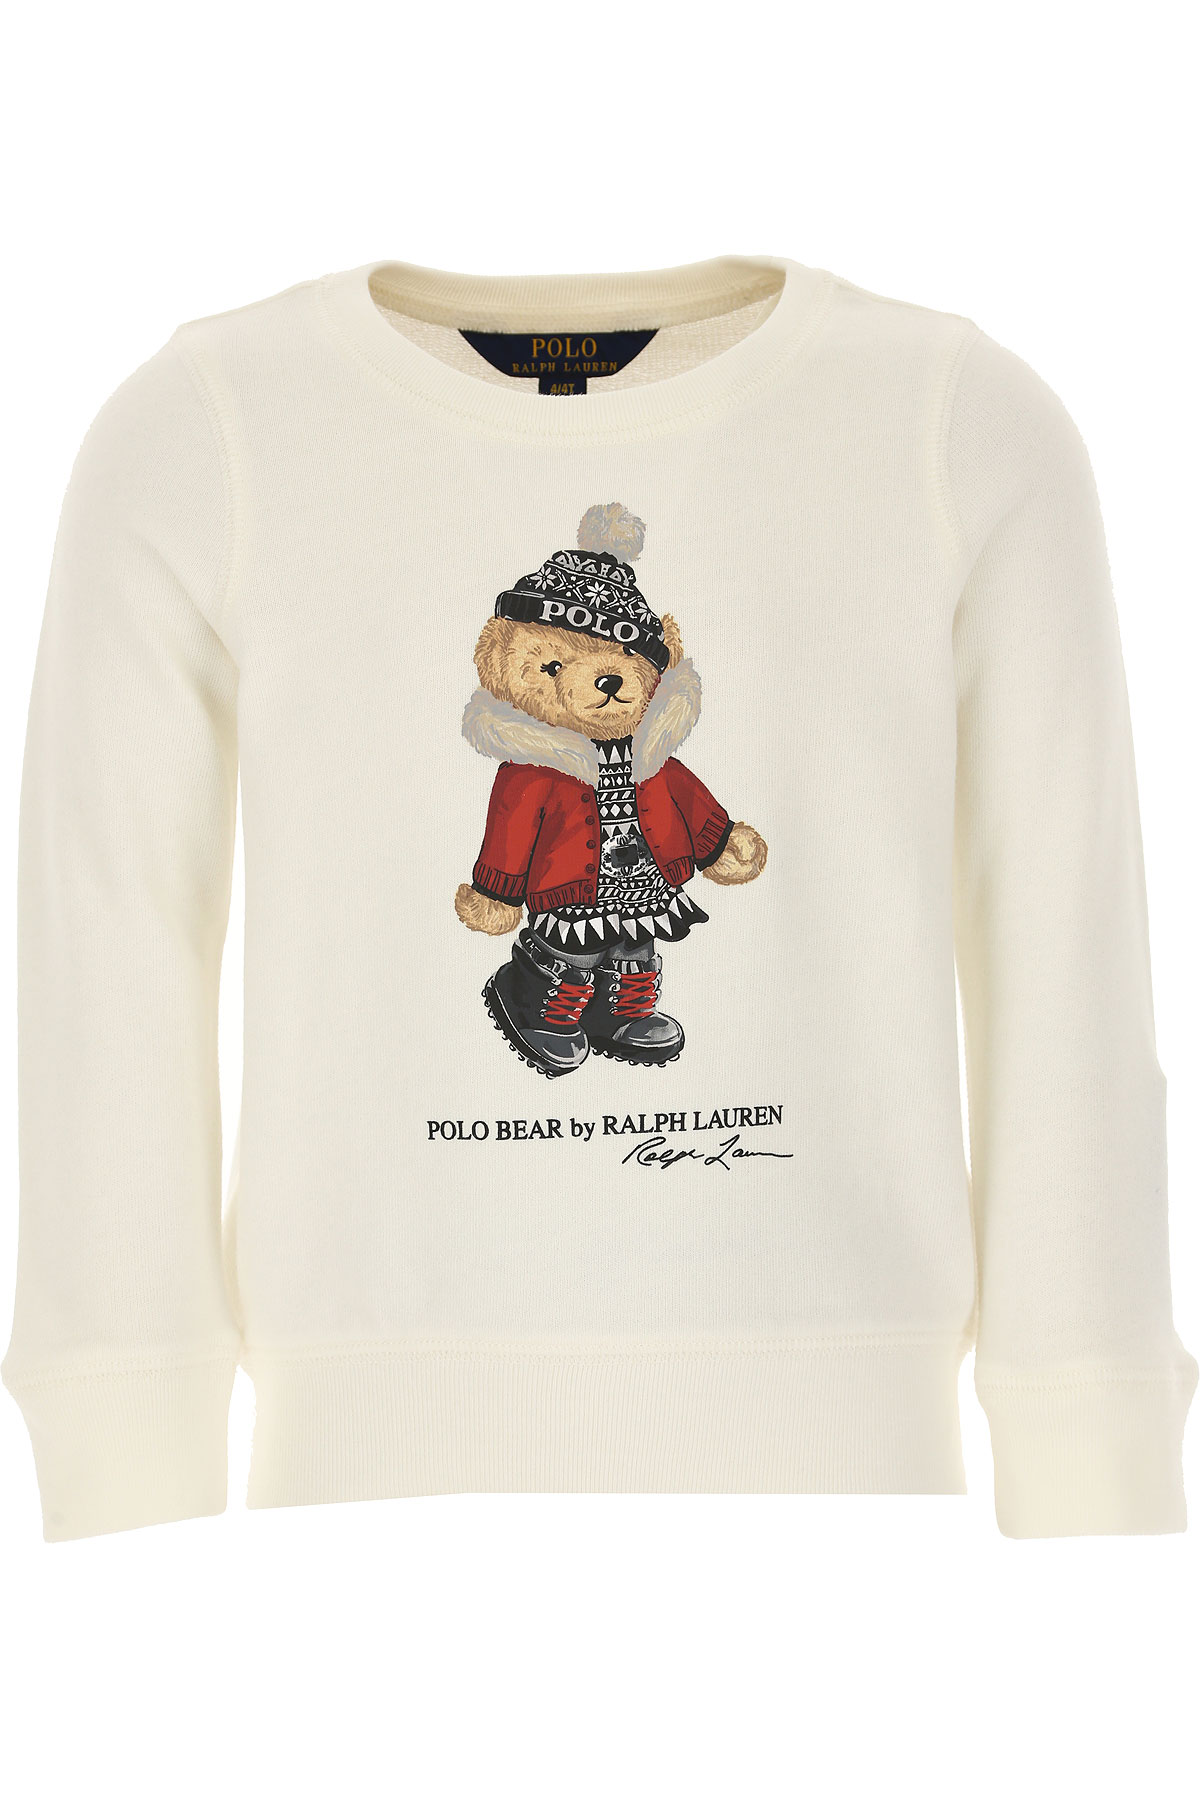 Ralph Lauren Kinder Sweatshirt & Kapuzenpullover für Mädchen Günstig im Sale, Weiss, Baumwolle, 2017, M S